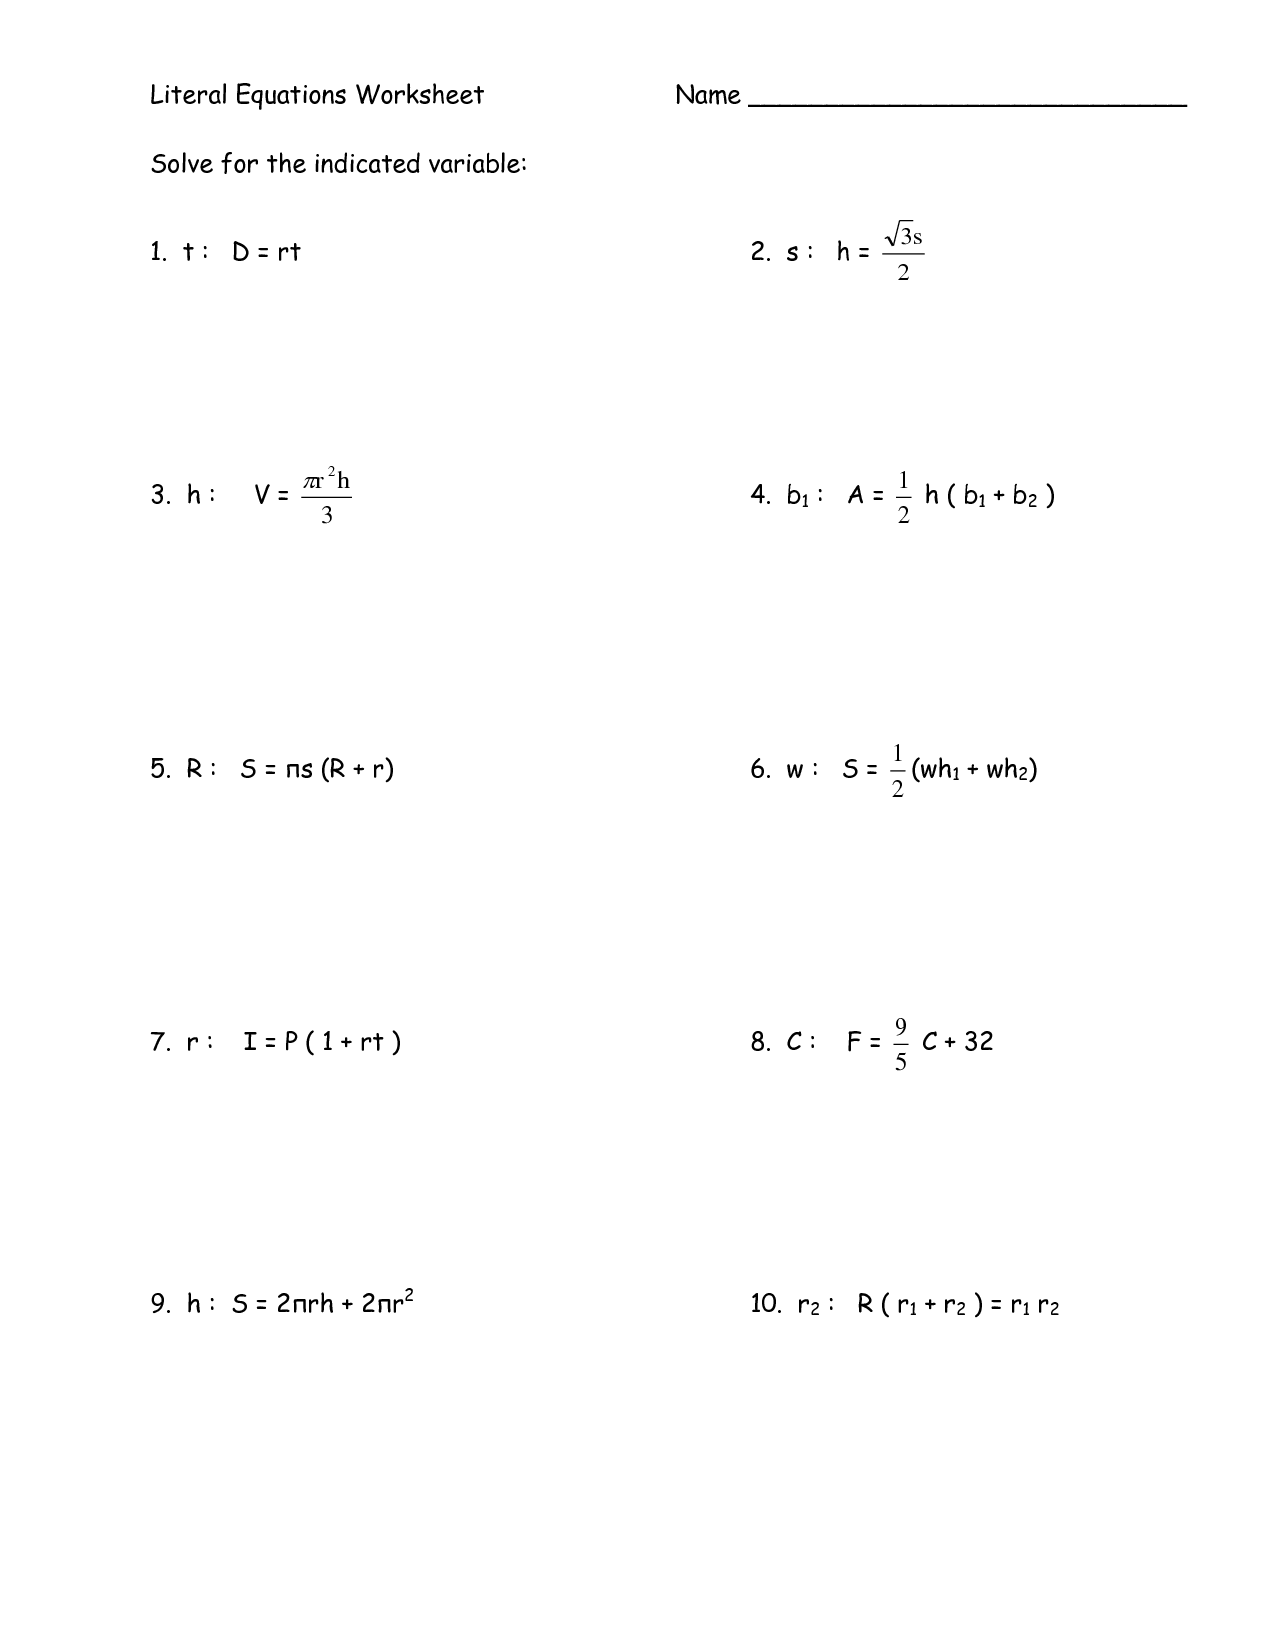 13-best-images-of-literal-equations-worksheet-algebra-2-math-literal-equations-worksheet